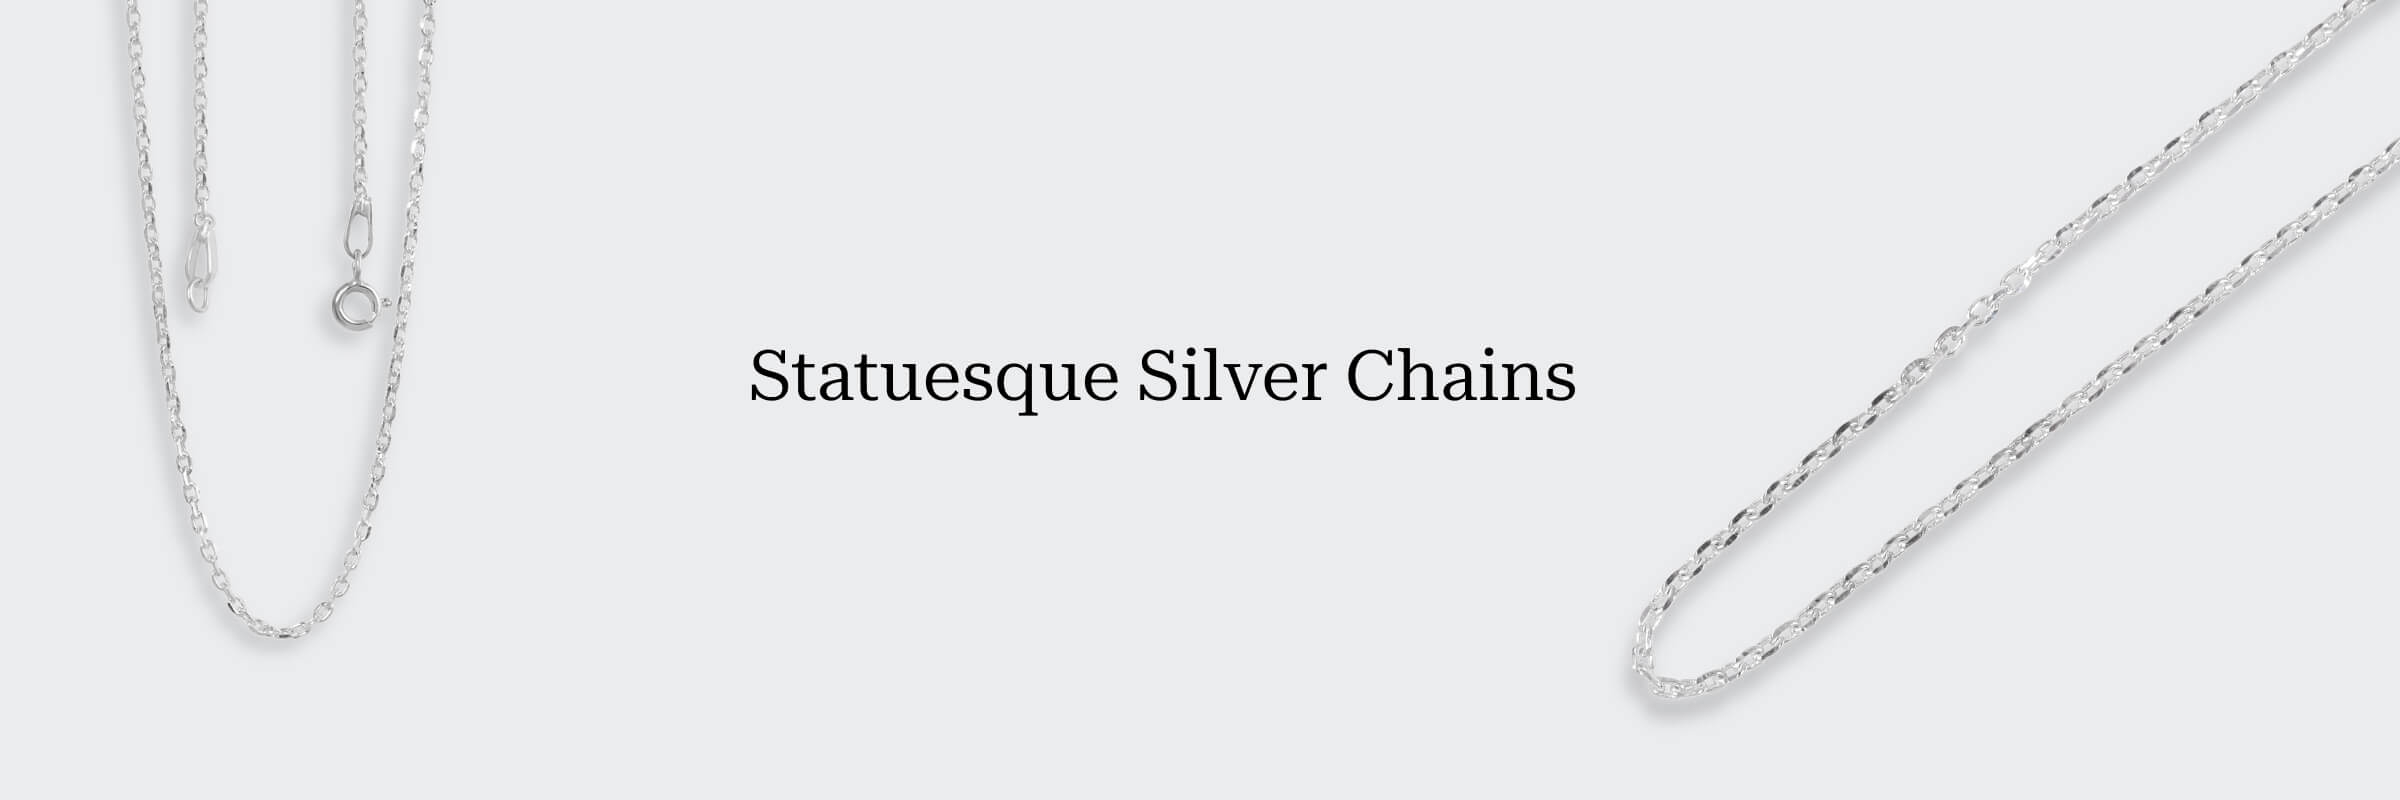 Plain Silver Chain